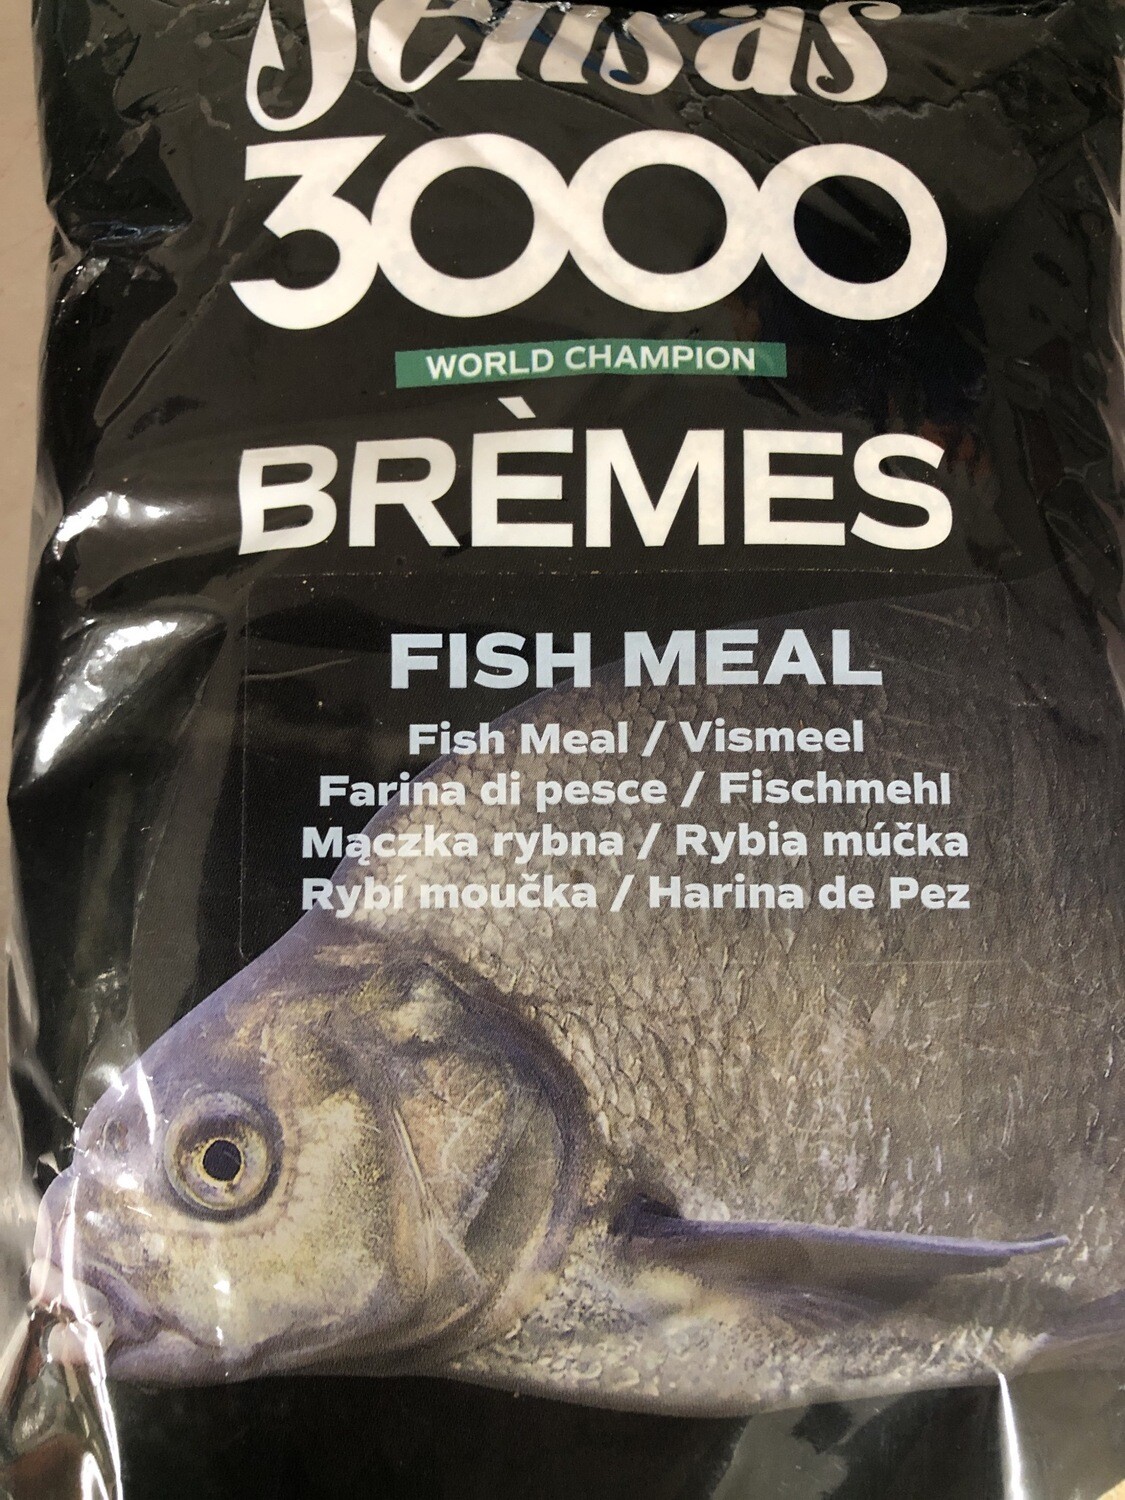 Sensas Bremes Fishmeal